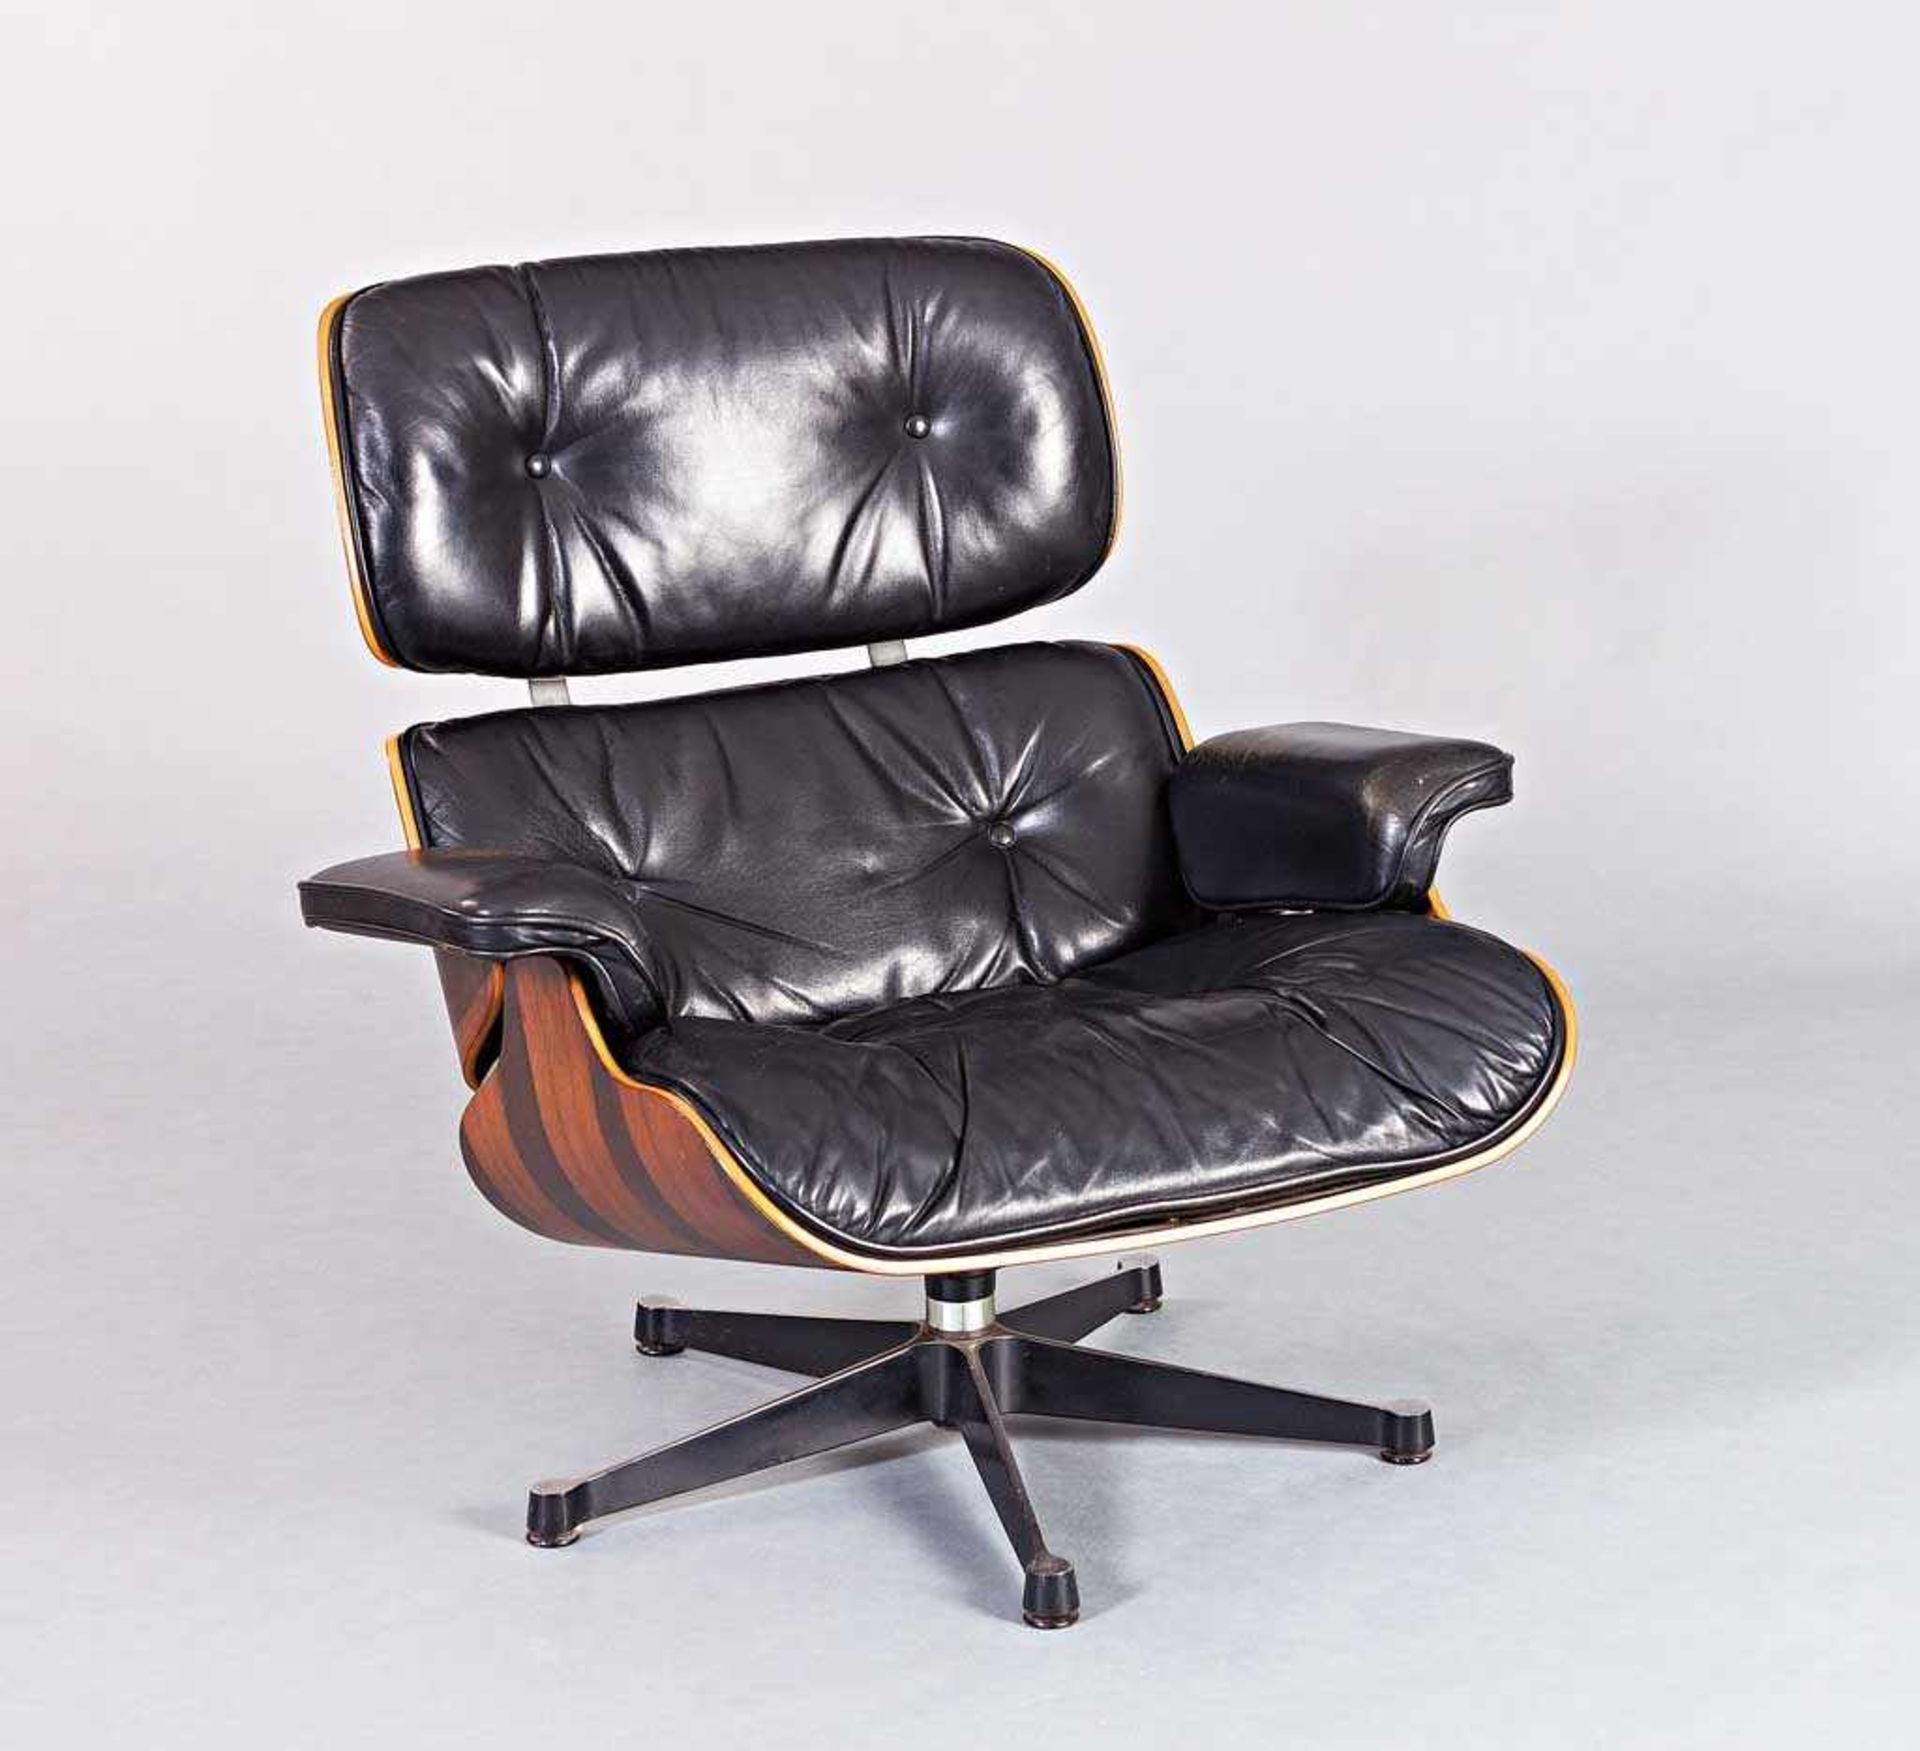 Lounge Chair. Palisanderfurniertes Sperrholz, geschwärztes und poliertes Gussaluminium. Schwarzes